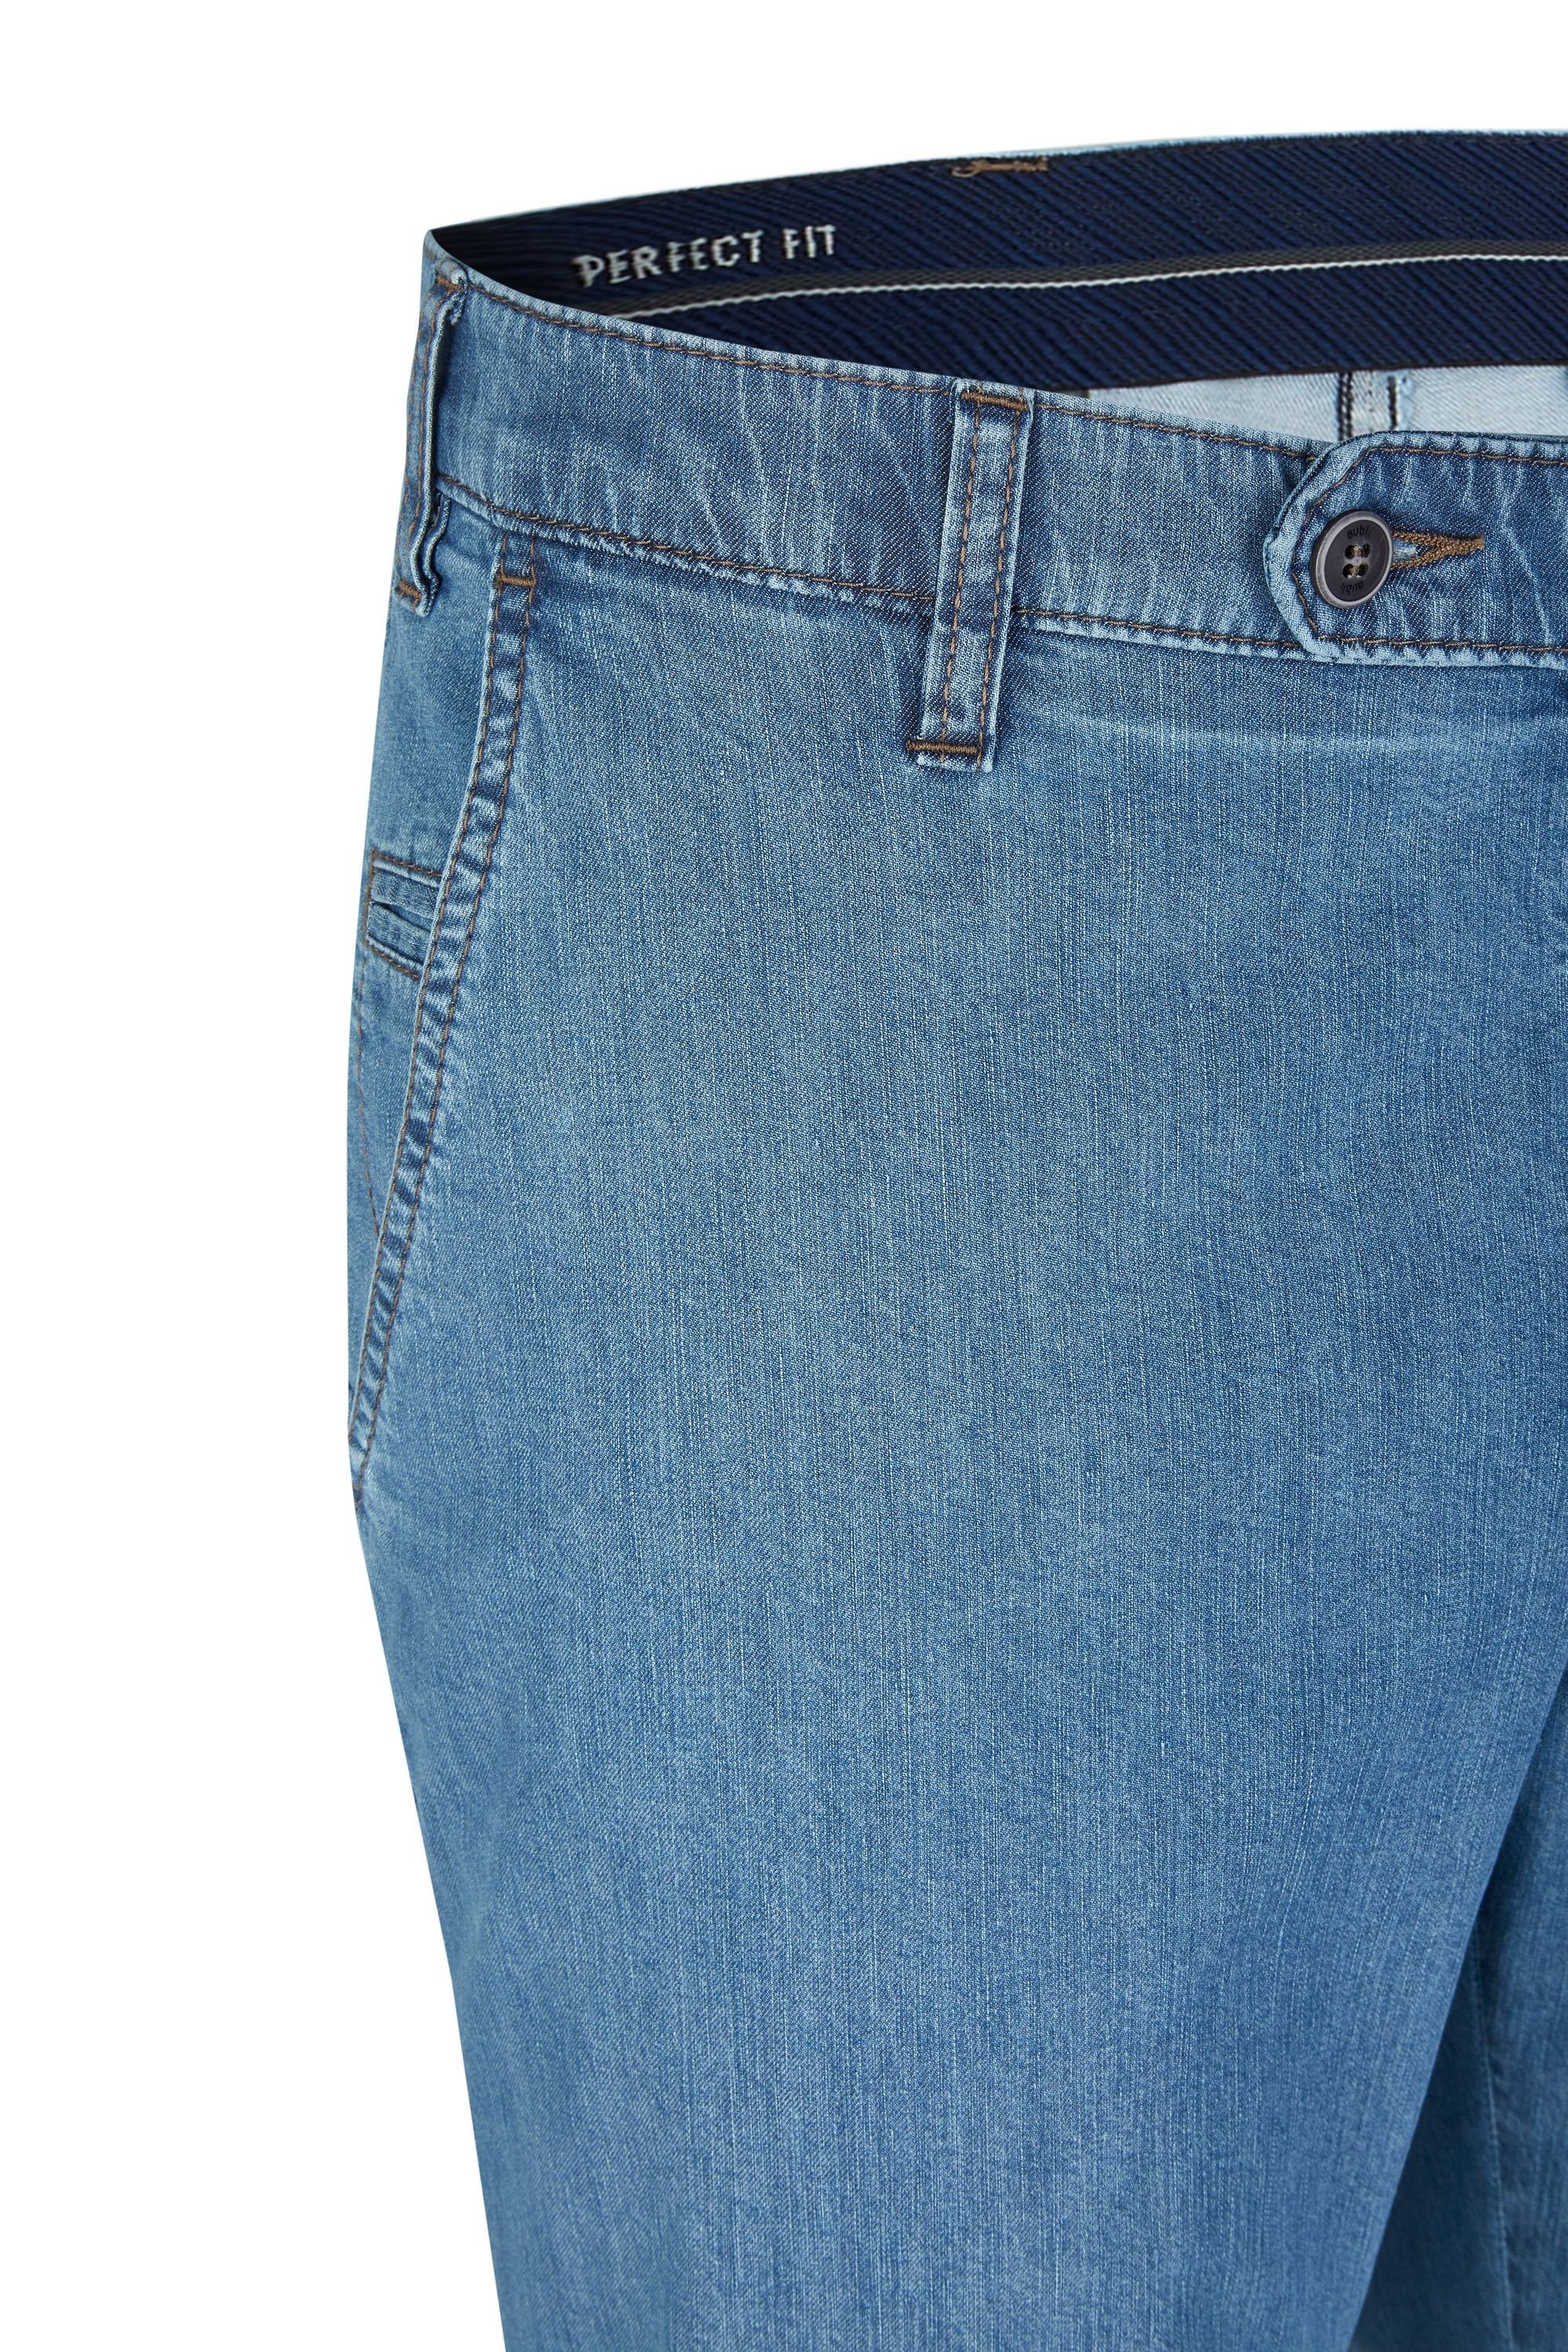 bleached (43) Sommer Herren Jeans 526 Stretch Flex Hose aus Fit aubi: High Jeans aubi Modell Bequeme Perfect Baumwolle